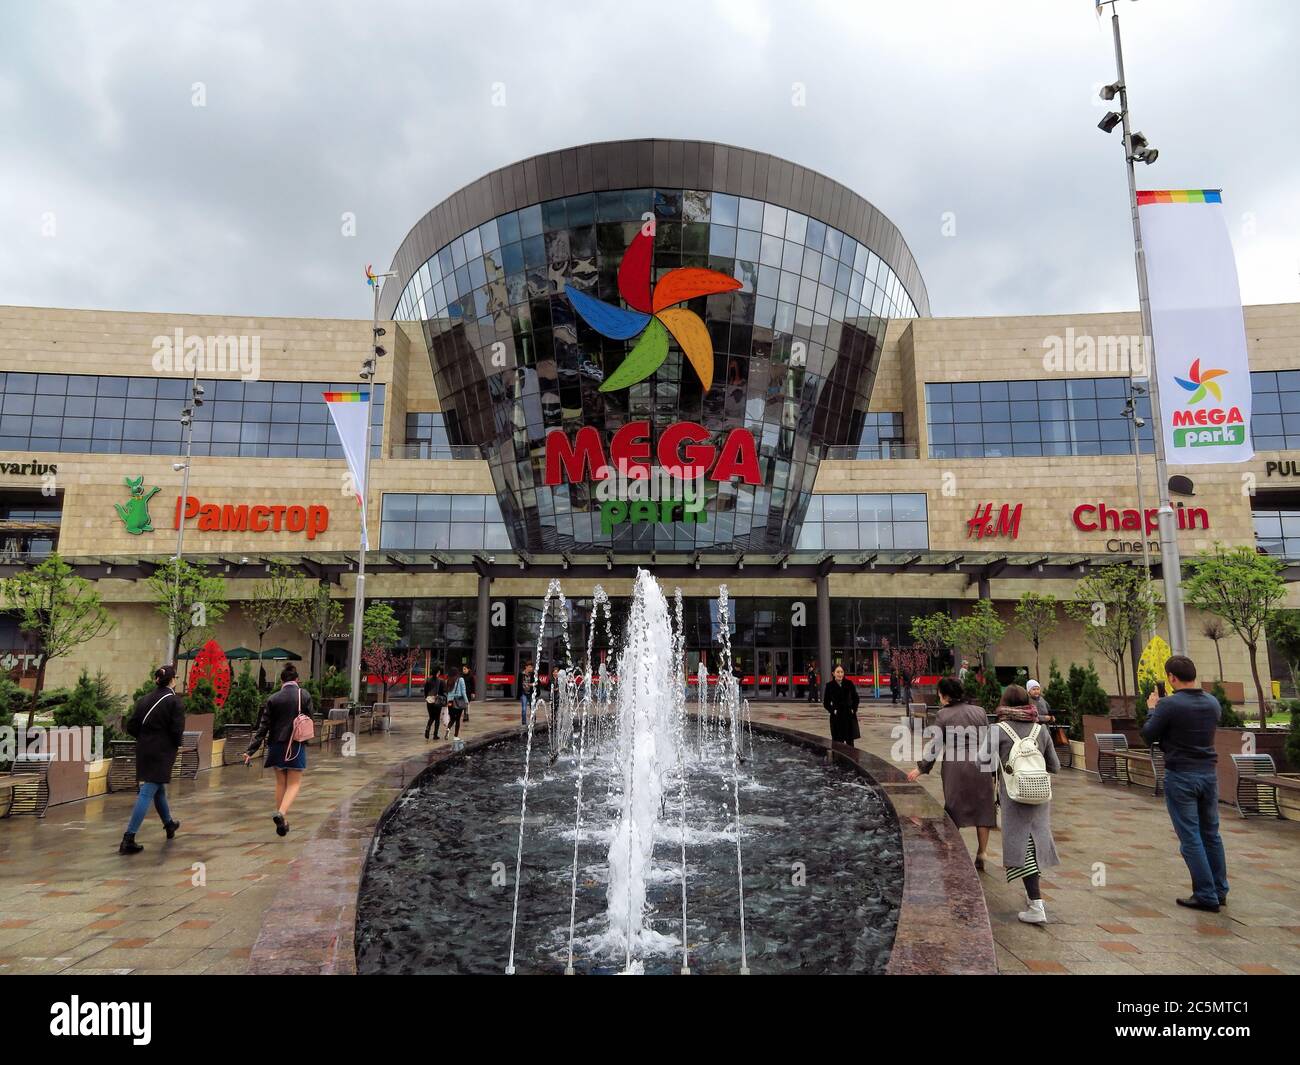 ALMATY, KAZAKHSTAN - 30 APRILE 2017: Centro commerciale e di intrattenimento Mega Park ad Almaty, Kazakhstan. Inaugurato nel 2015, è il più grande dipartimento Foto Stock